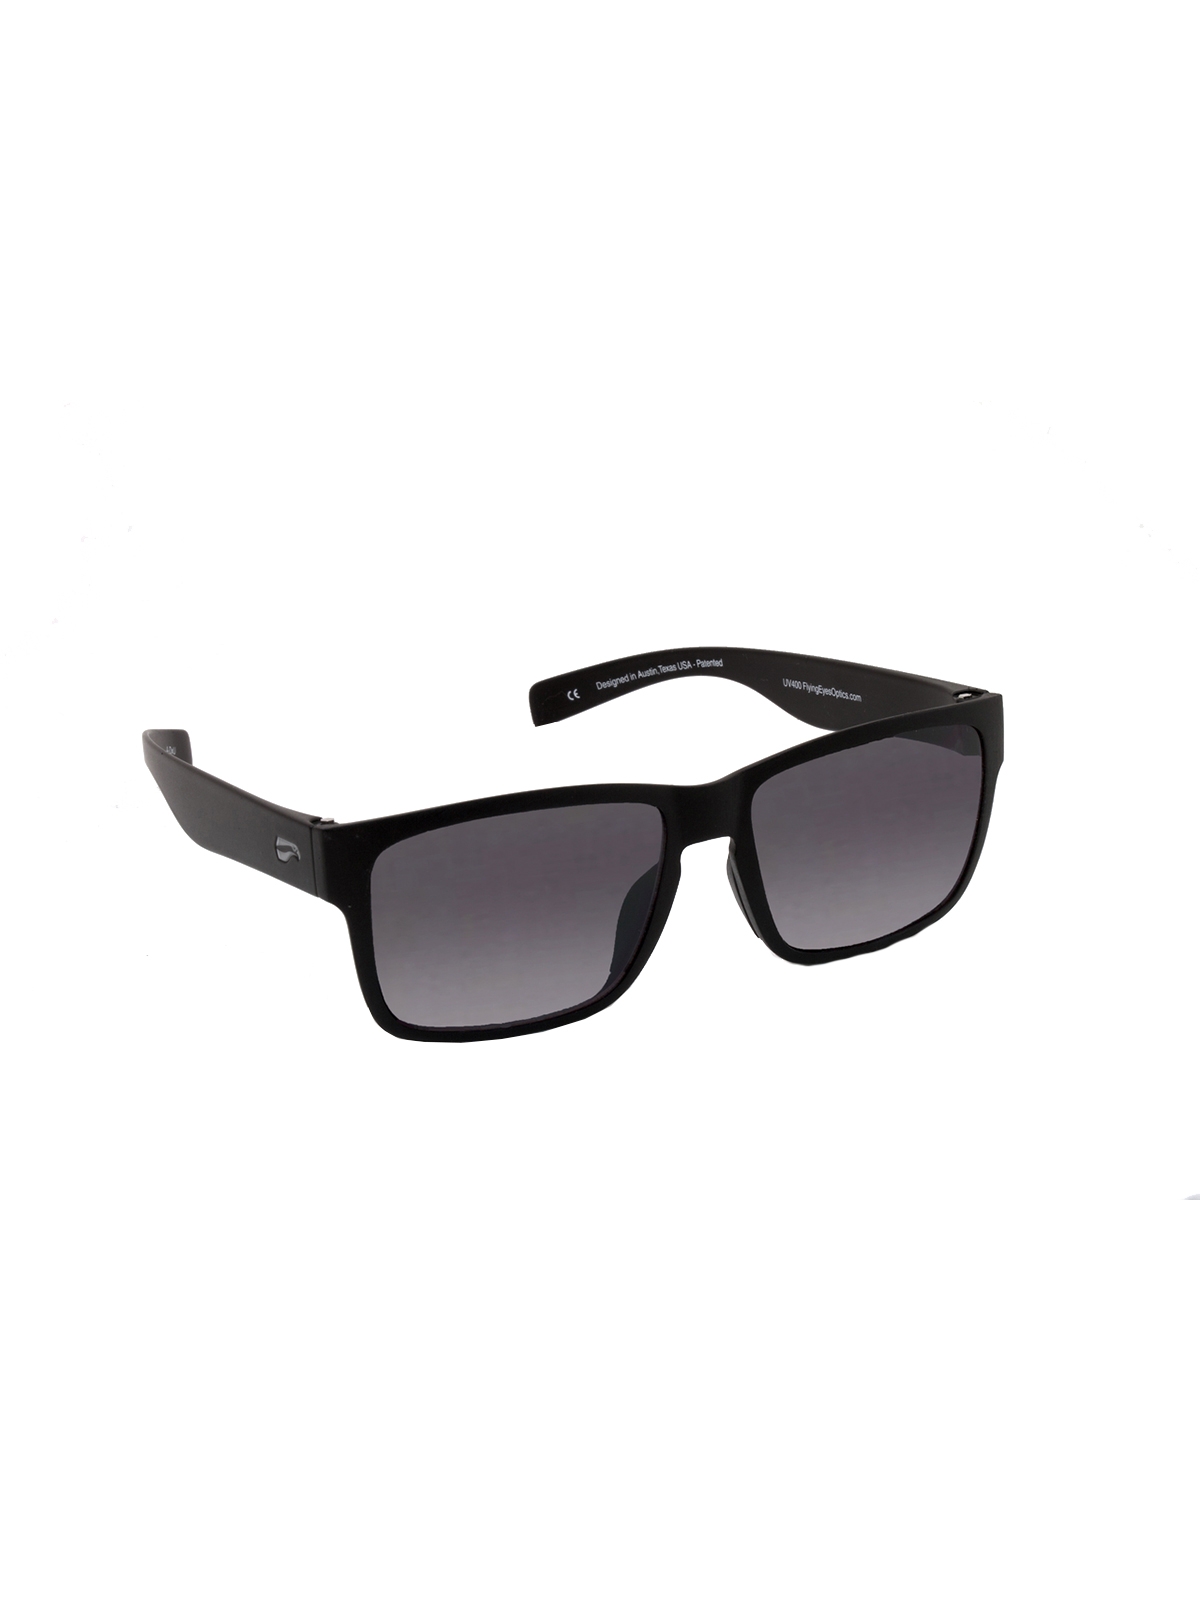 Flying Eyes Sunglasses Osprey - Matte Black Frame, Gradient Gray Lenses